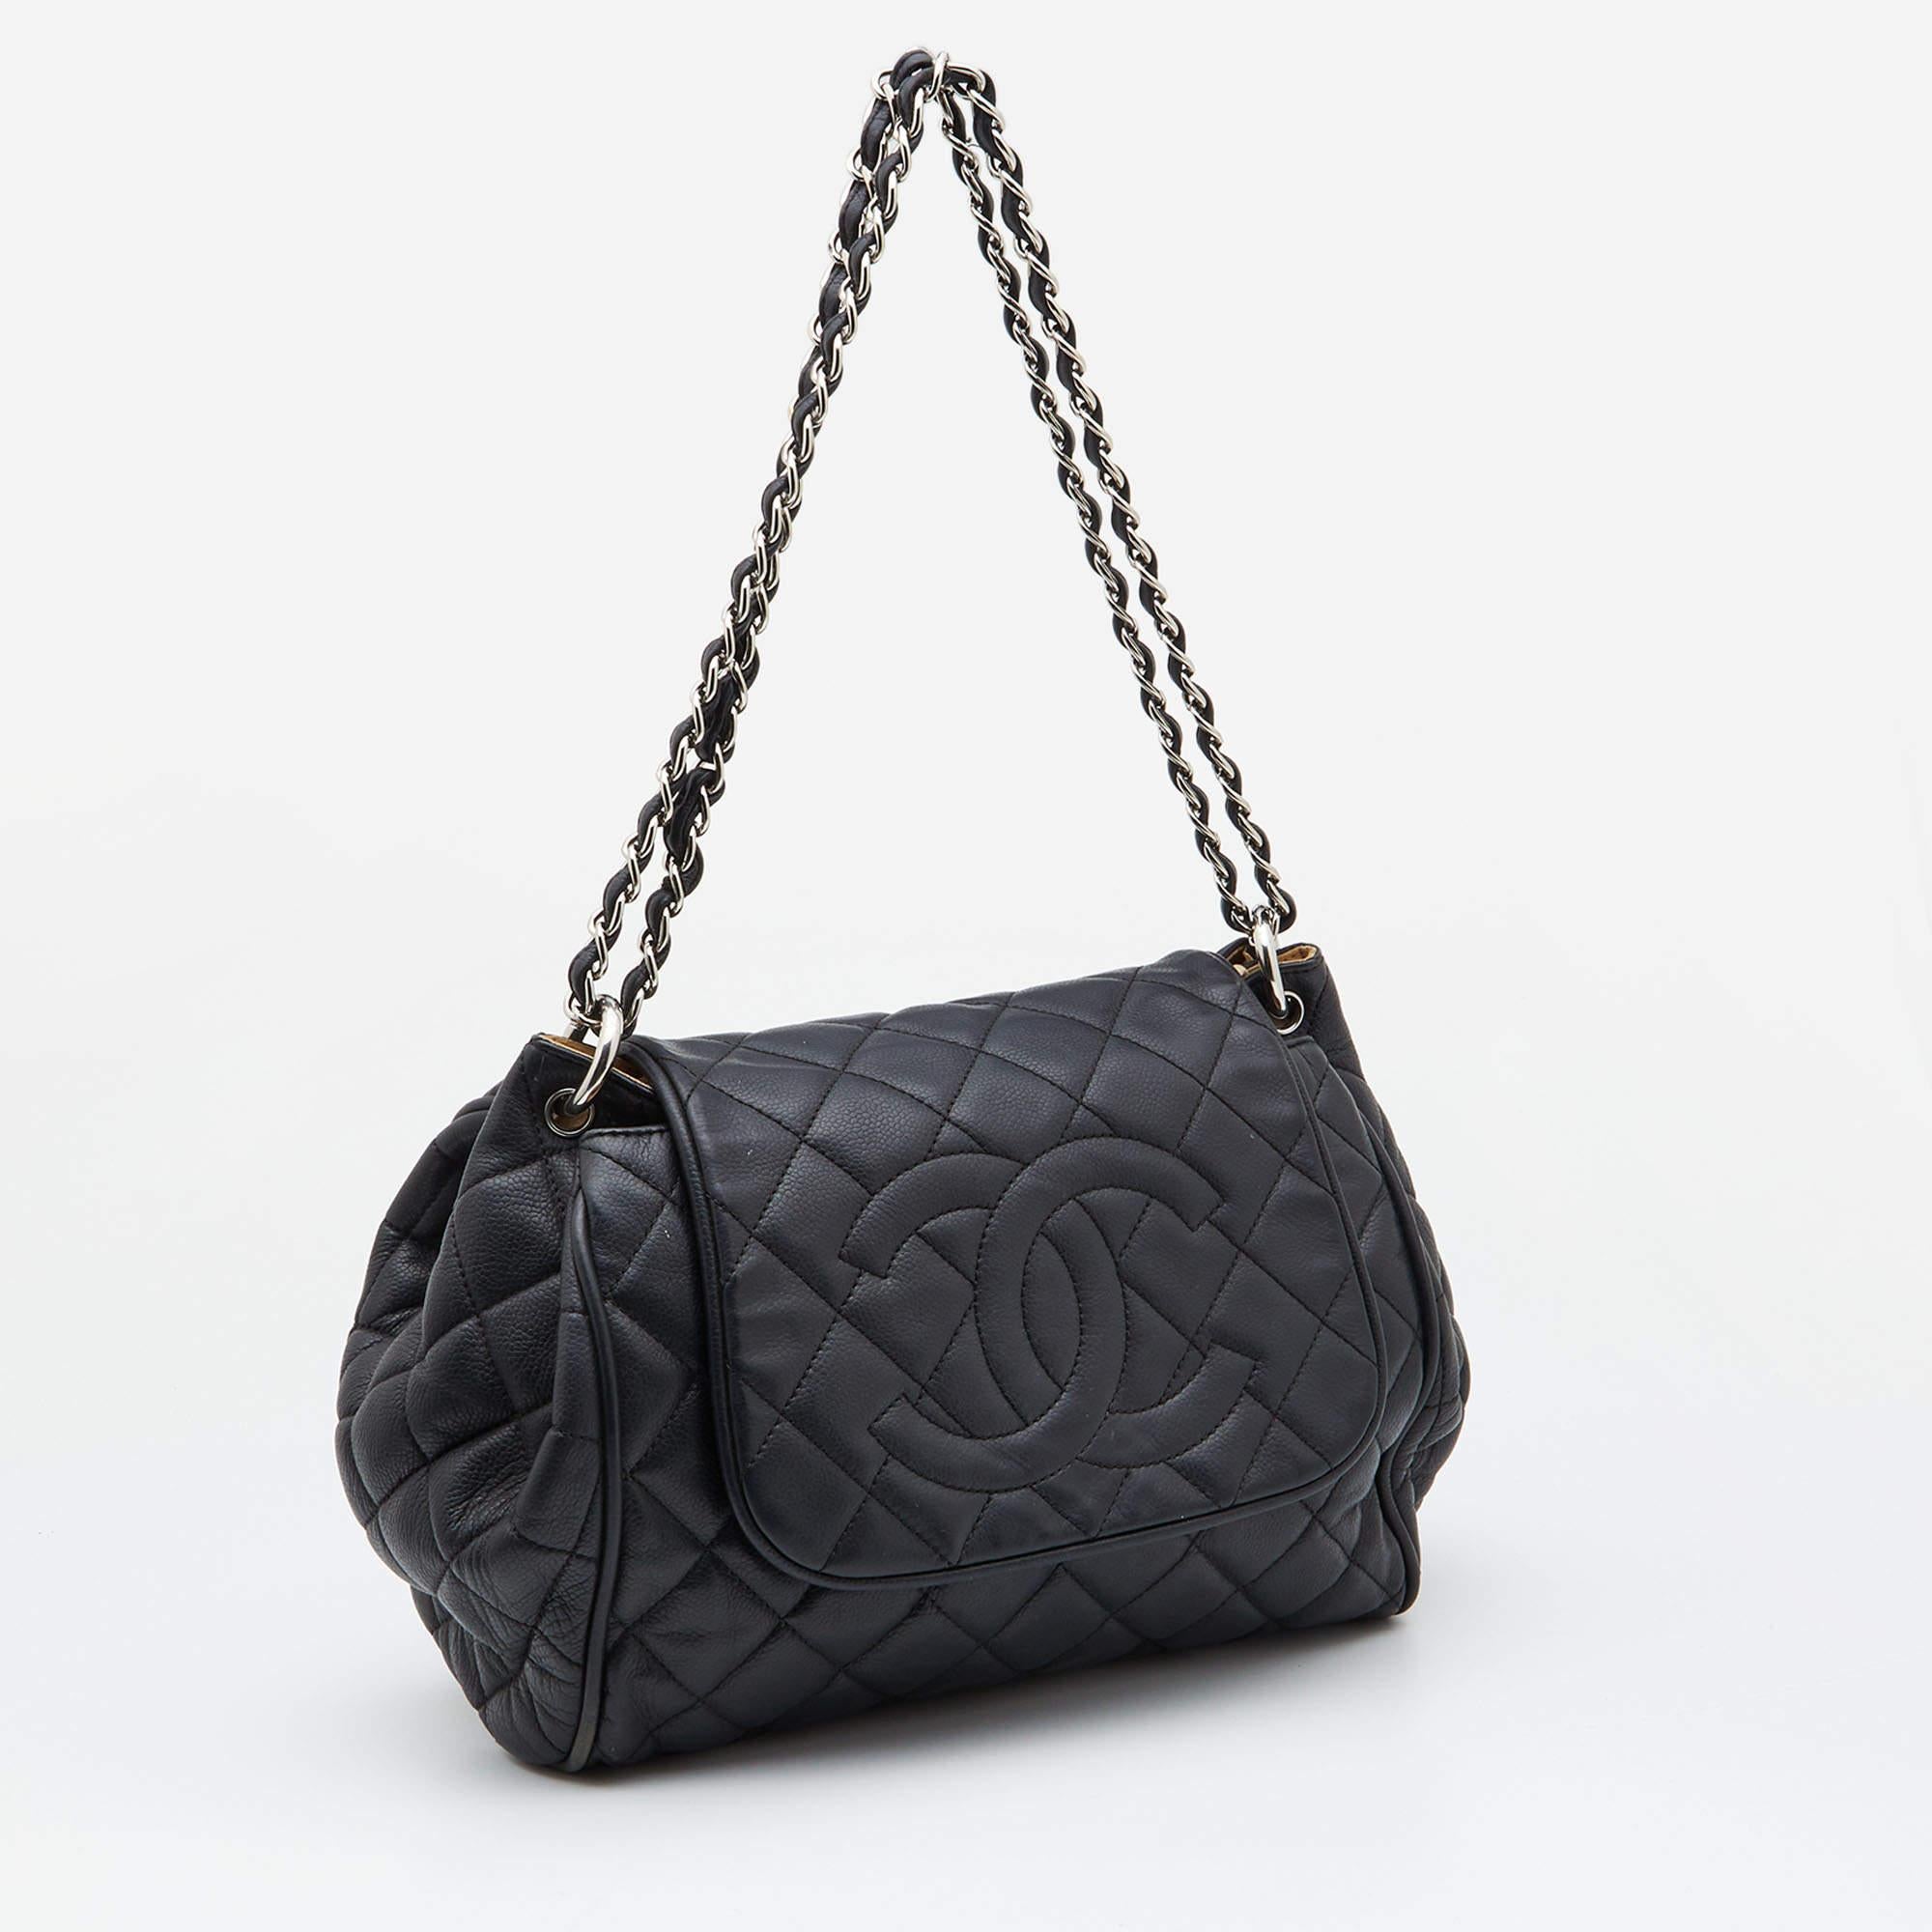 Women's Chanel Black Leather CC Accordion Flap Shoulder Bag